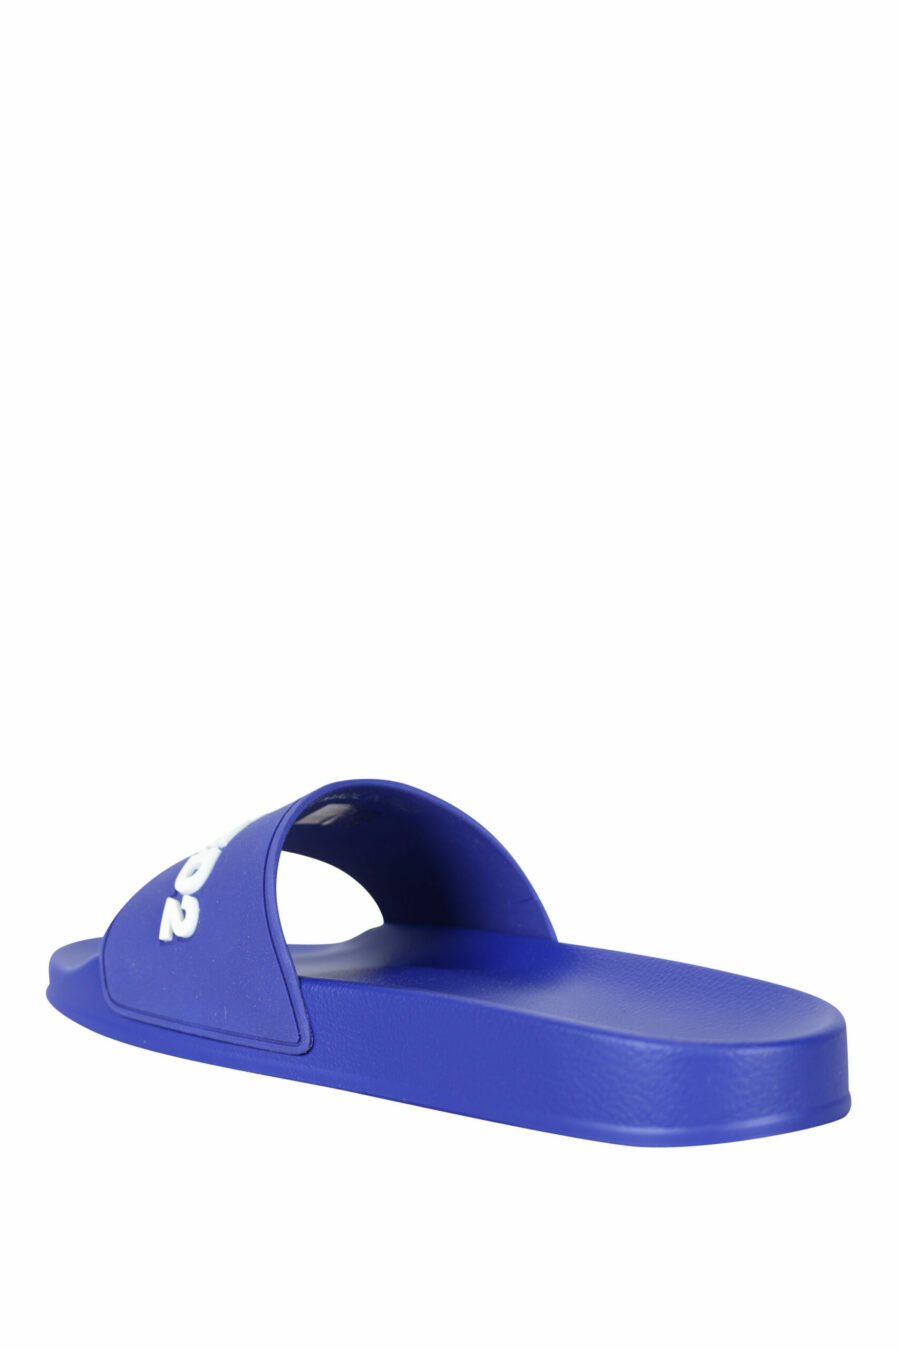 Blaue Flip Flops mit weißem Maxilogo - 8055777073780 3 skaliert